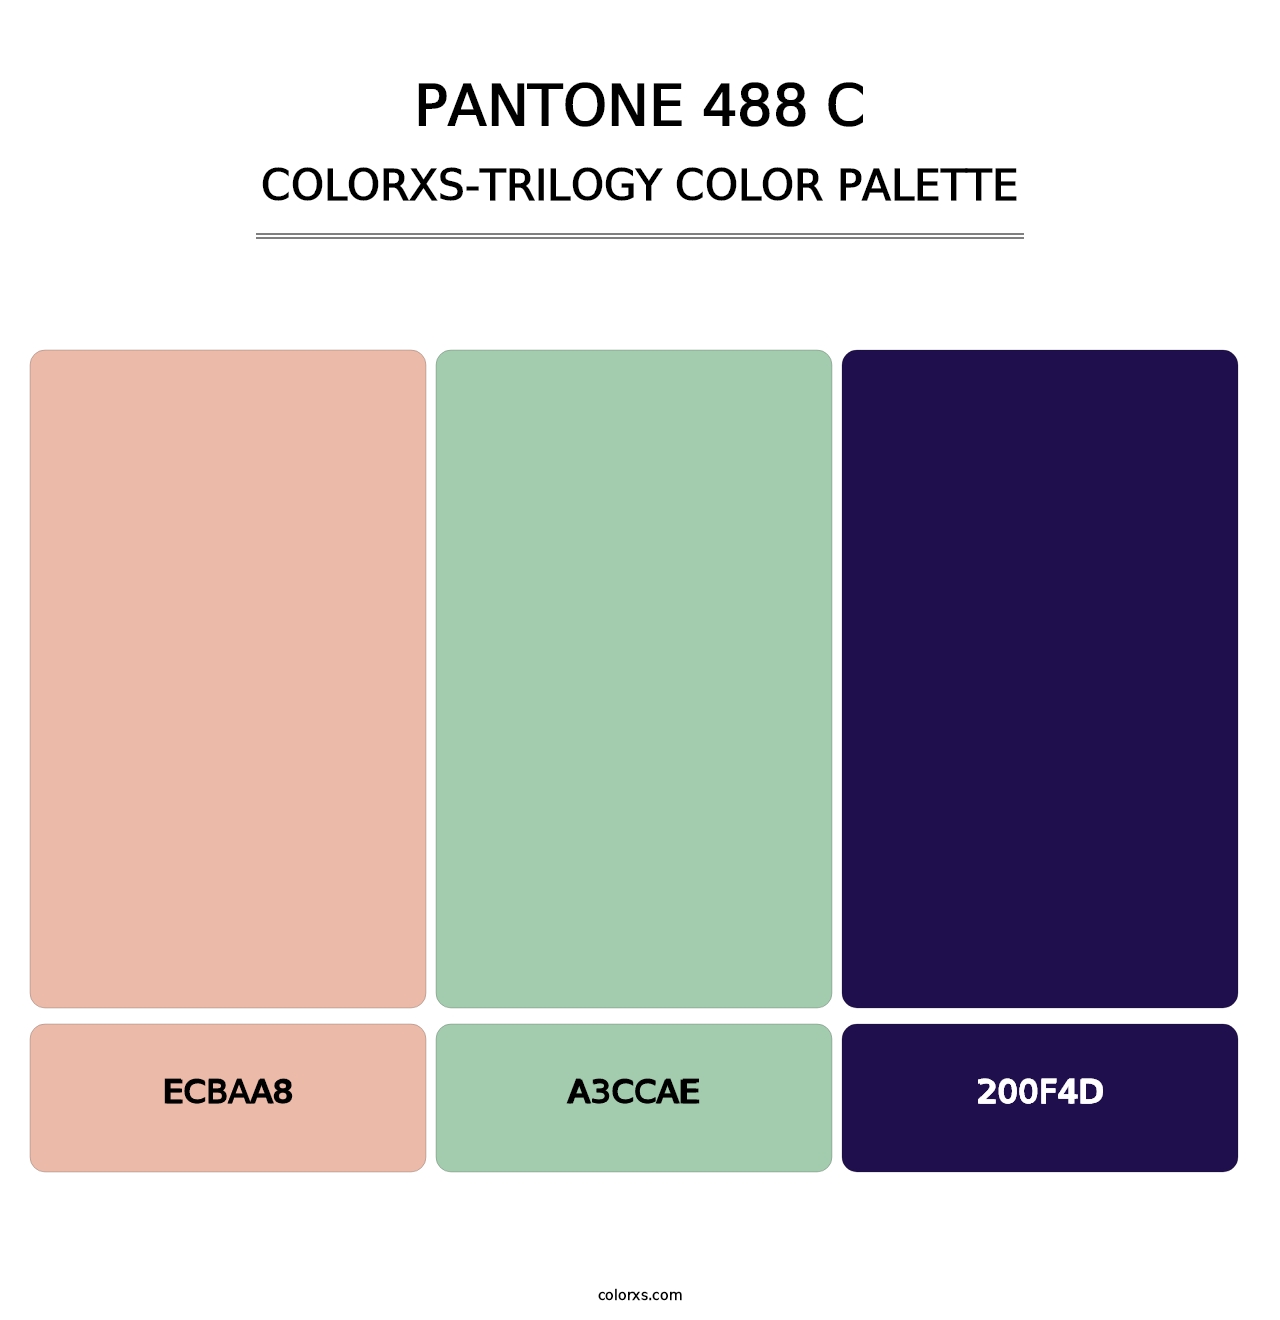 PANTONE 488 C - Colorxs Trilogy Palette